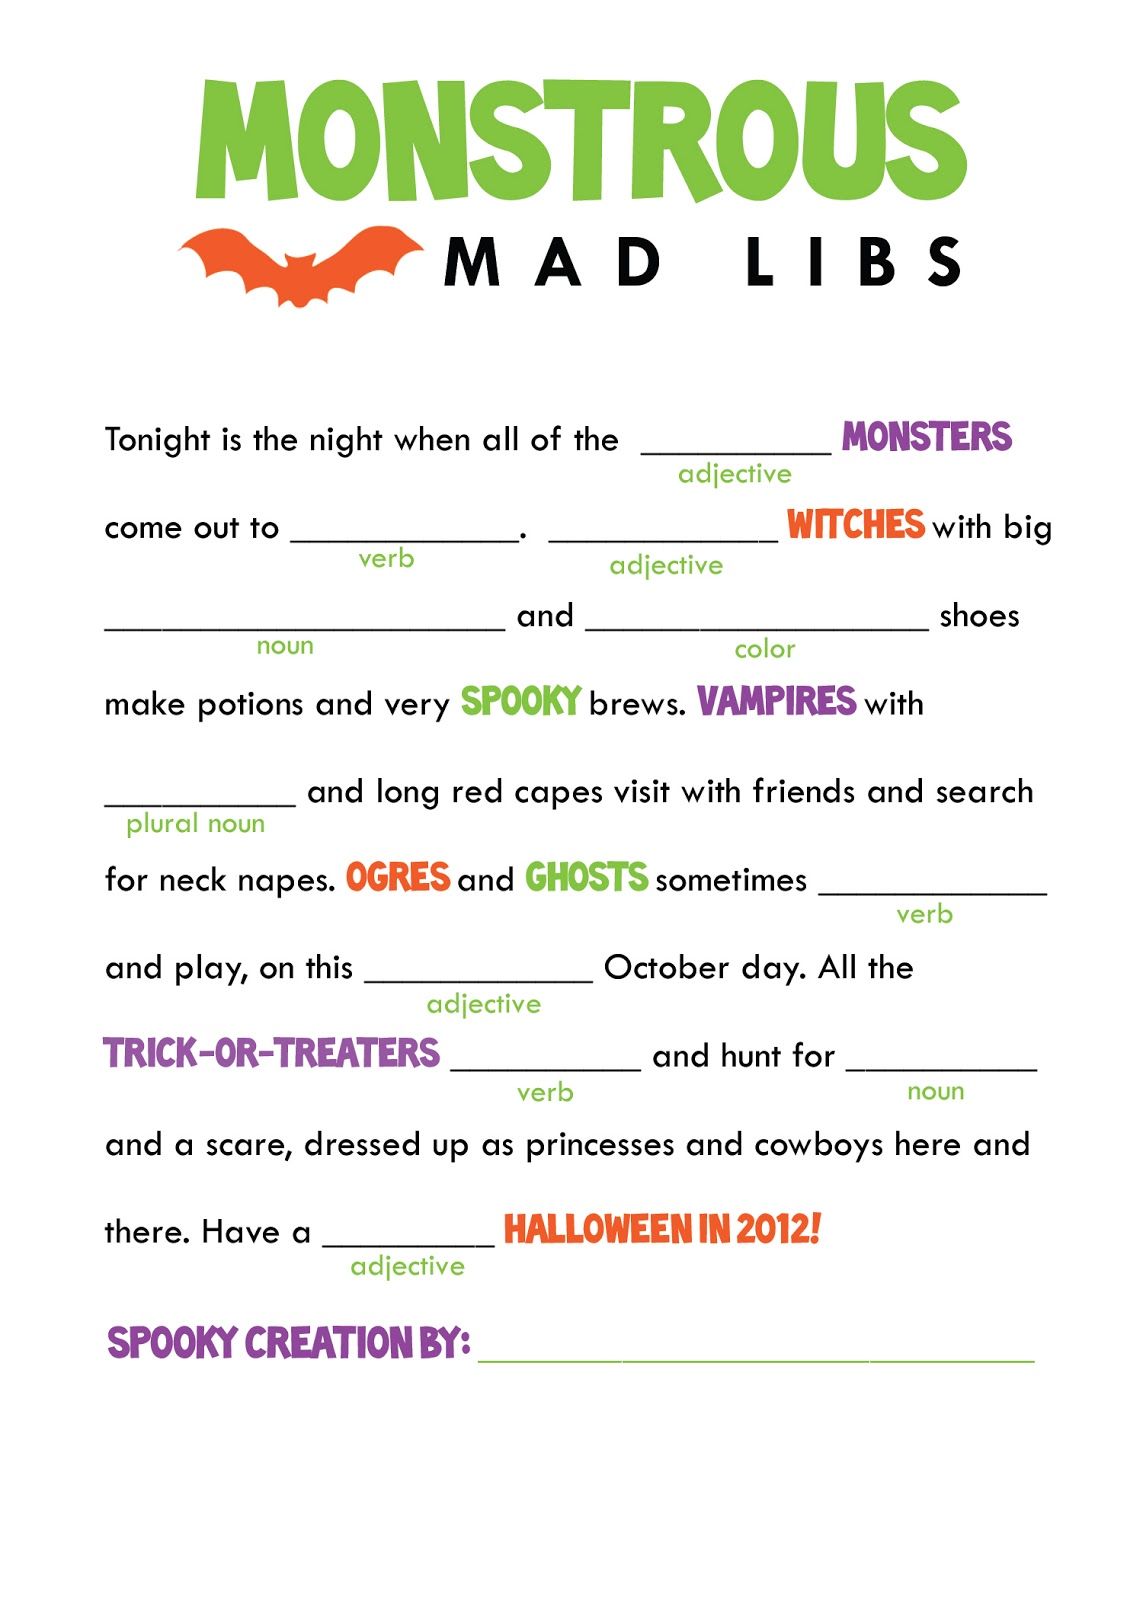 Printable Adult Halloween Mad Libs_6245885